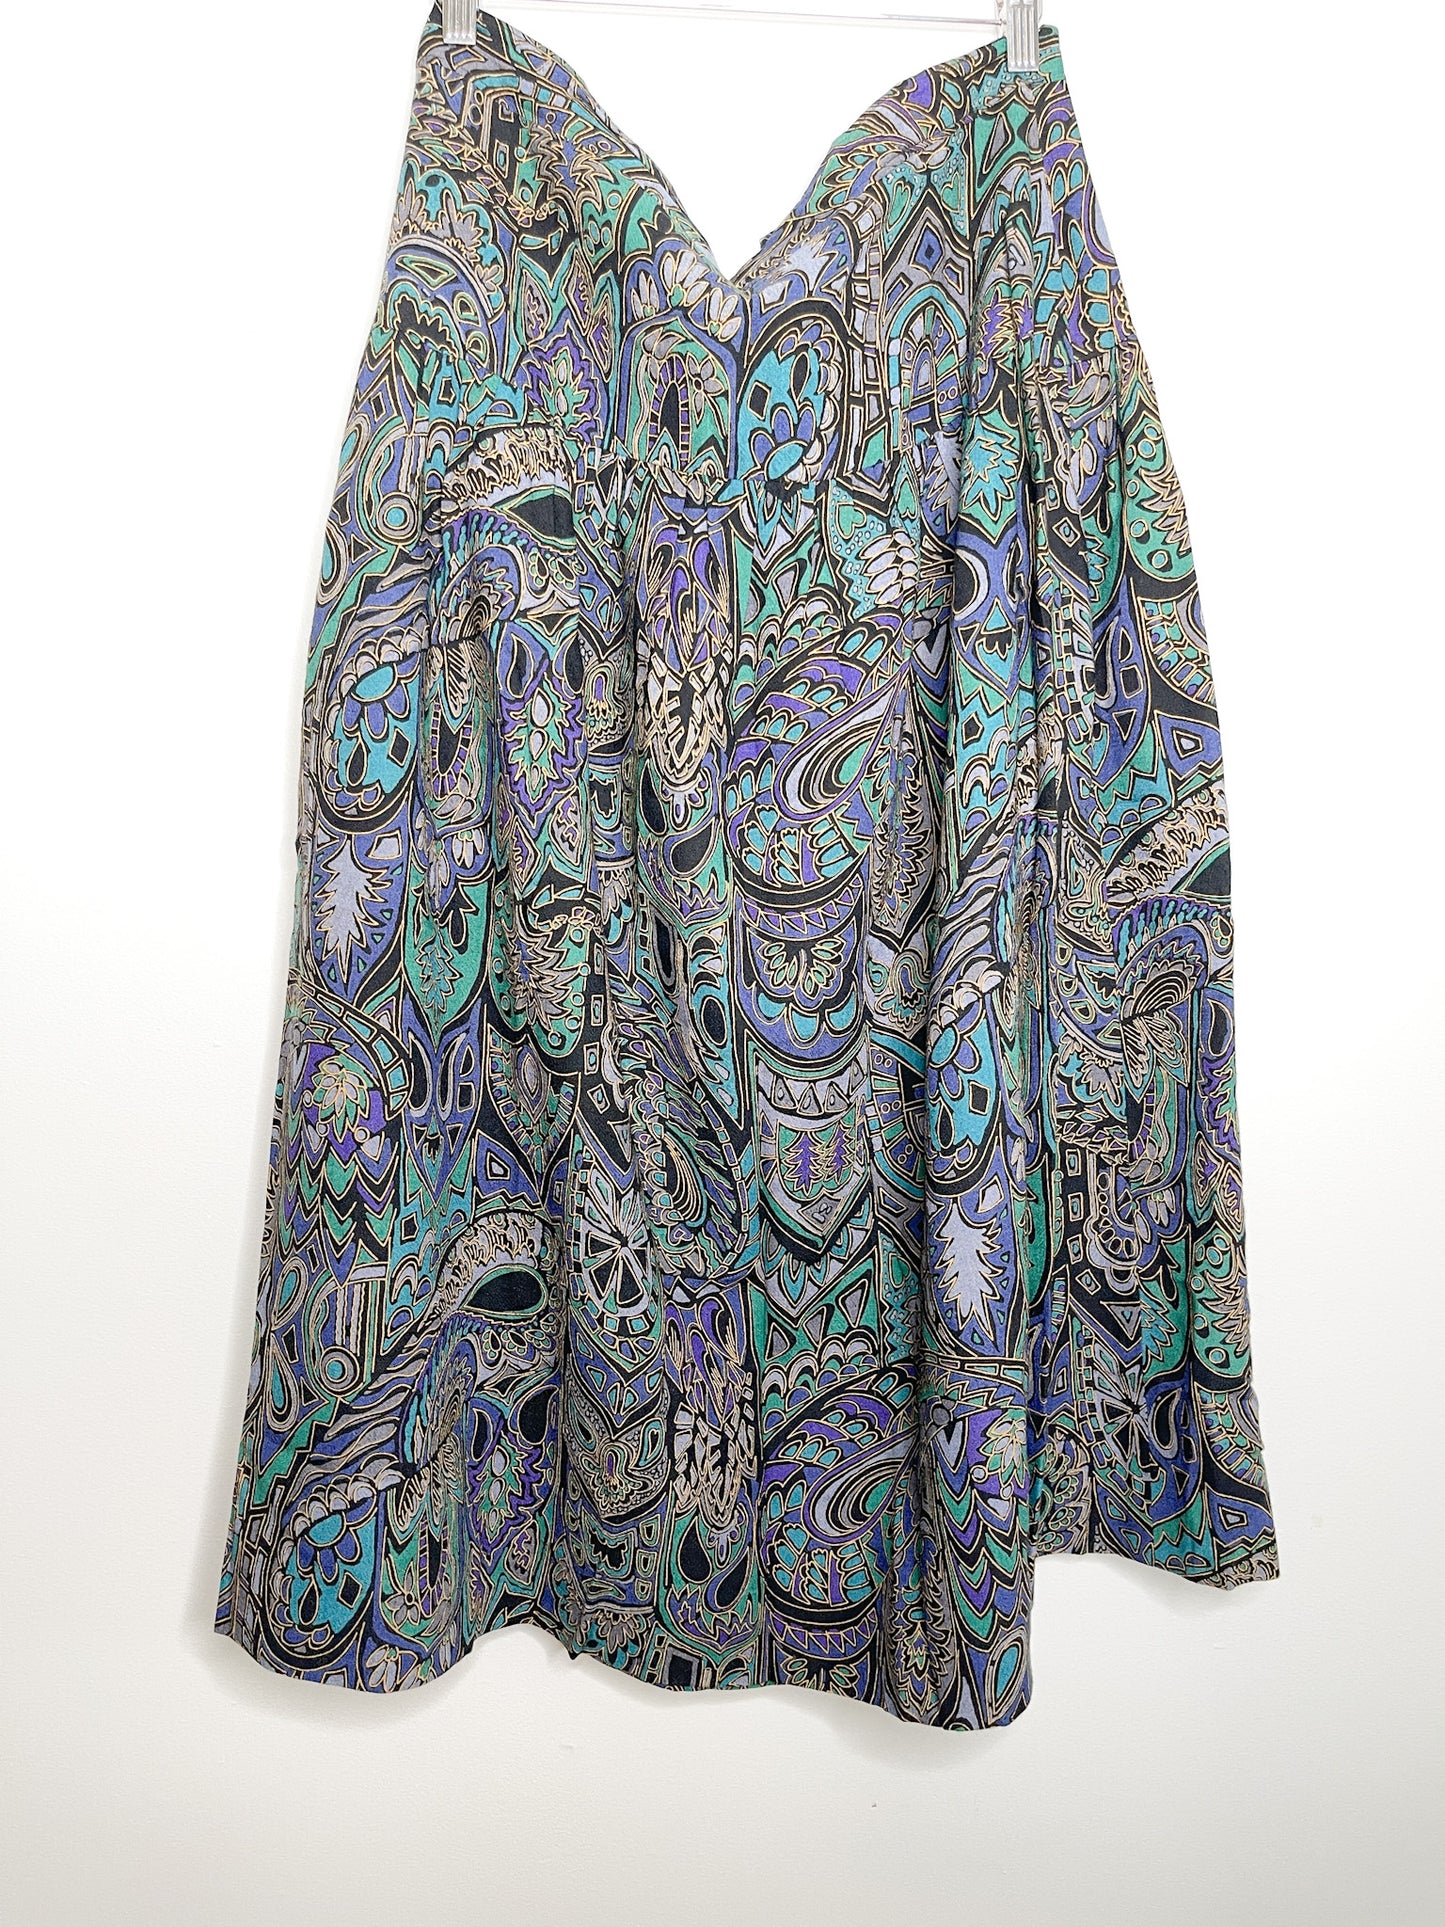 Vintage Dark Floral Printed Skirt Size Large - XTRA Large | Floral A-Line Skirt |